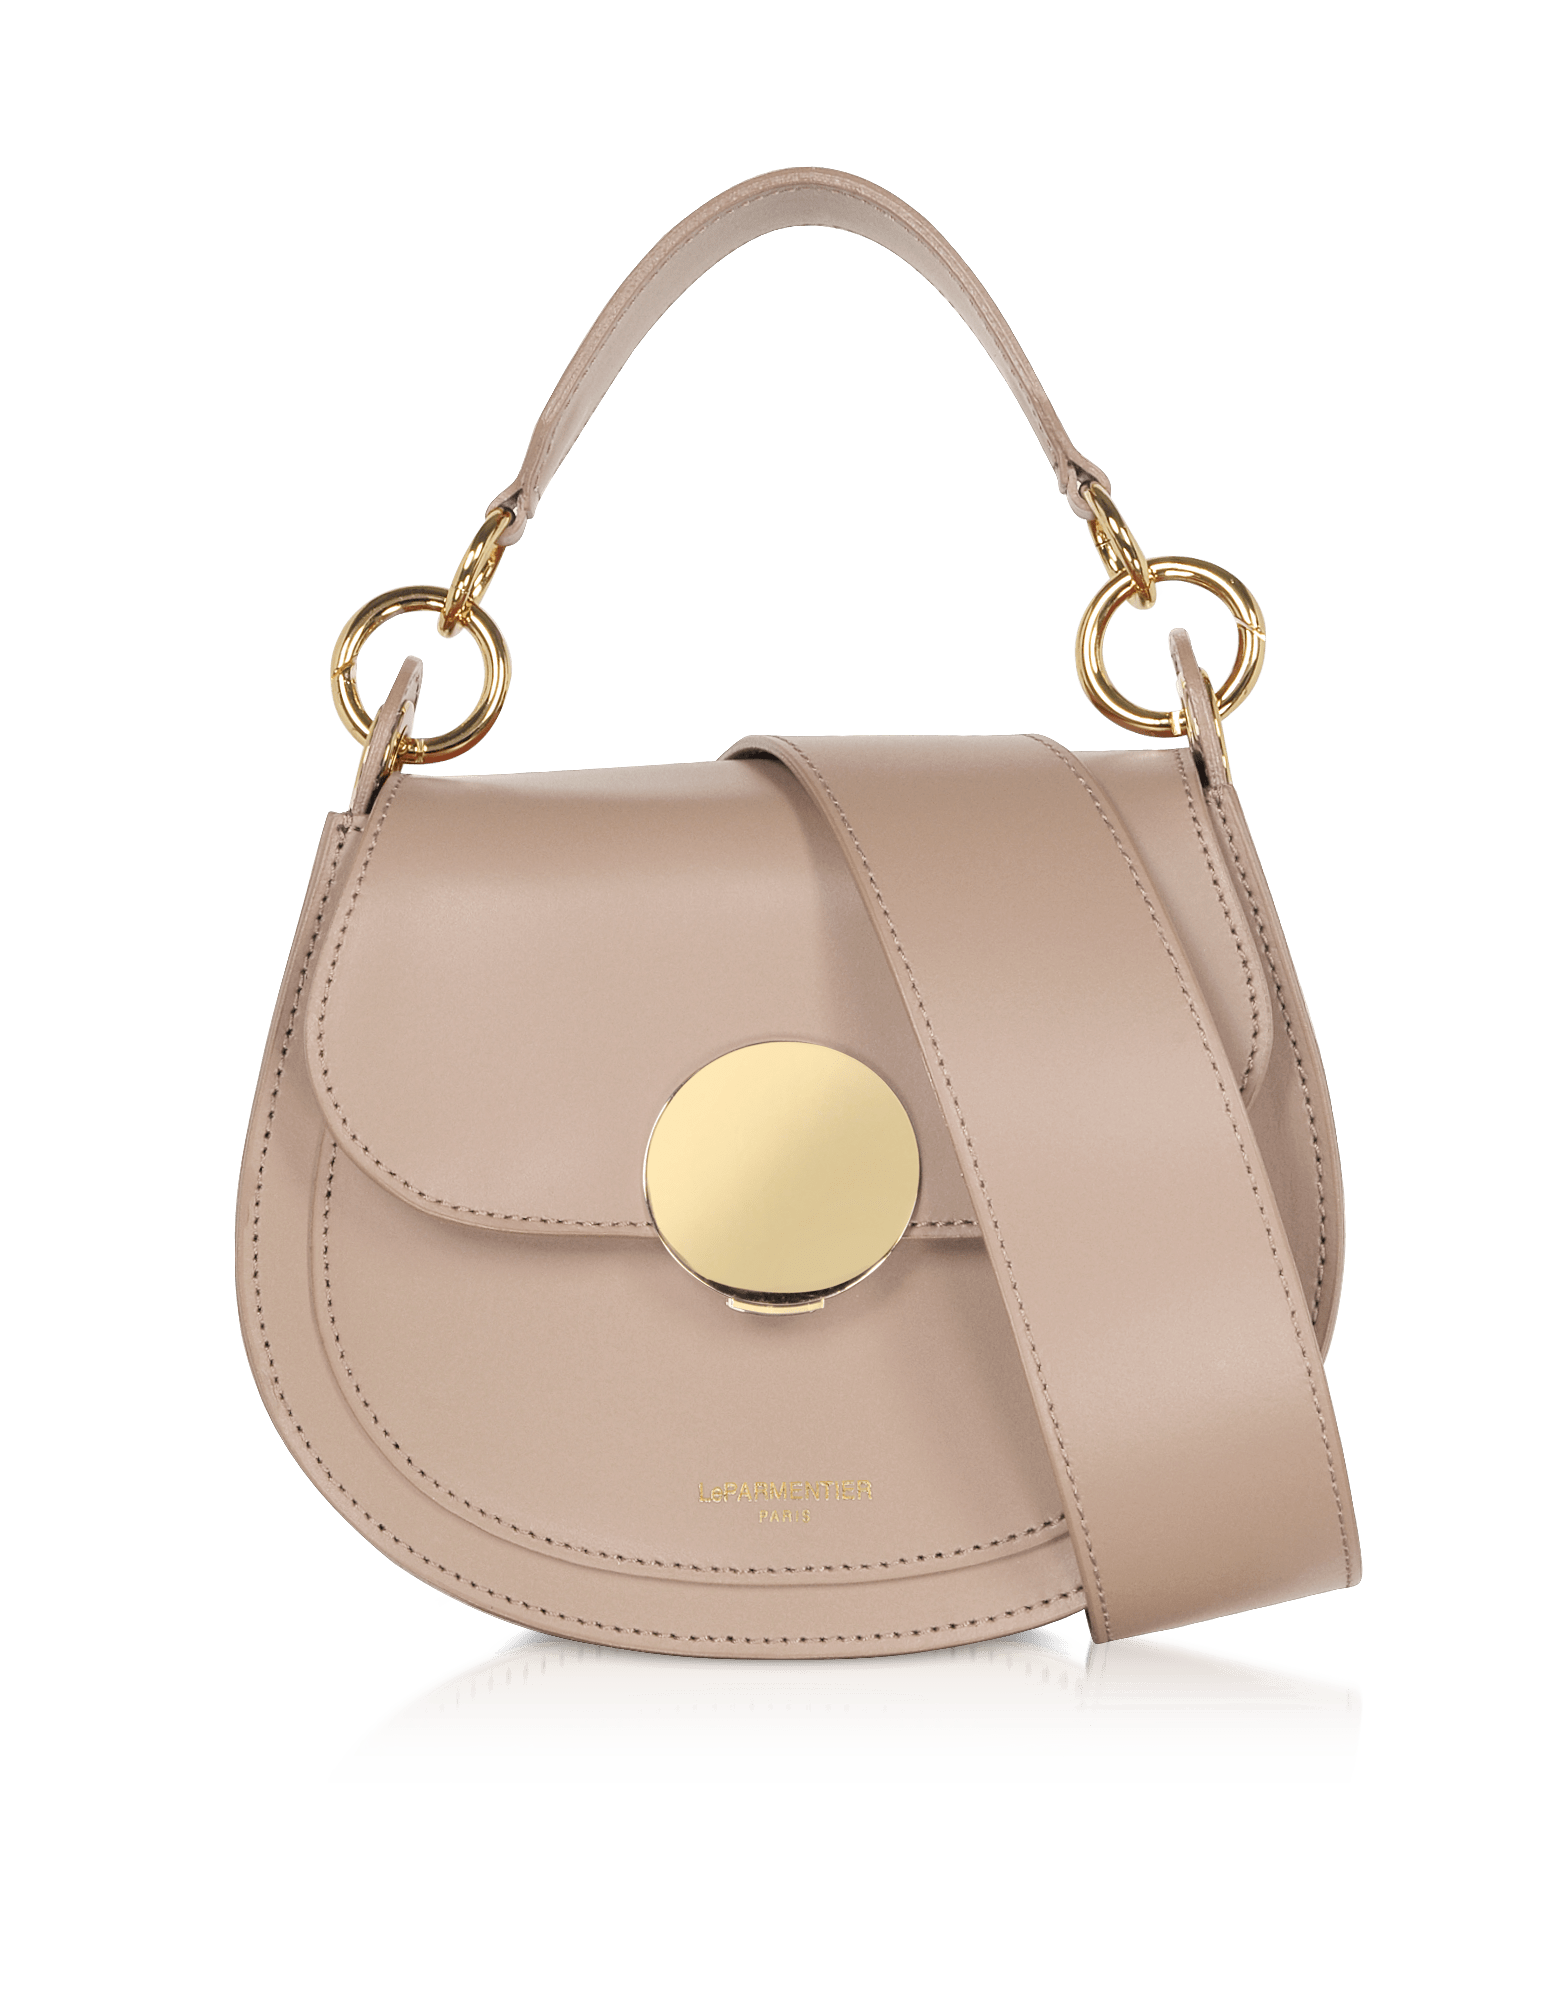 Le Parmentier Women's Yucca Soho Top-handle Shoulder Bag - Neutrals